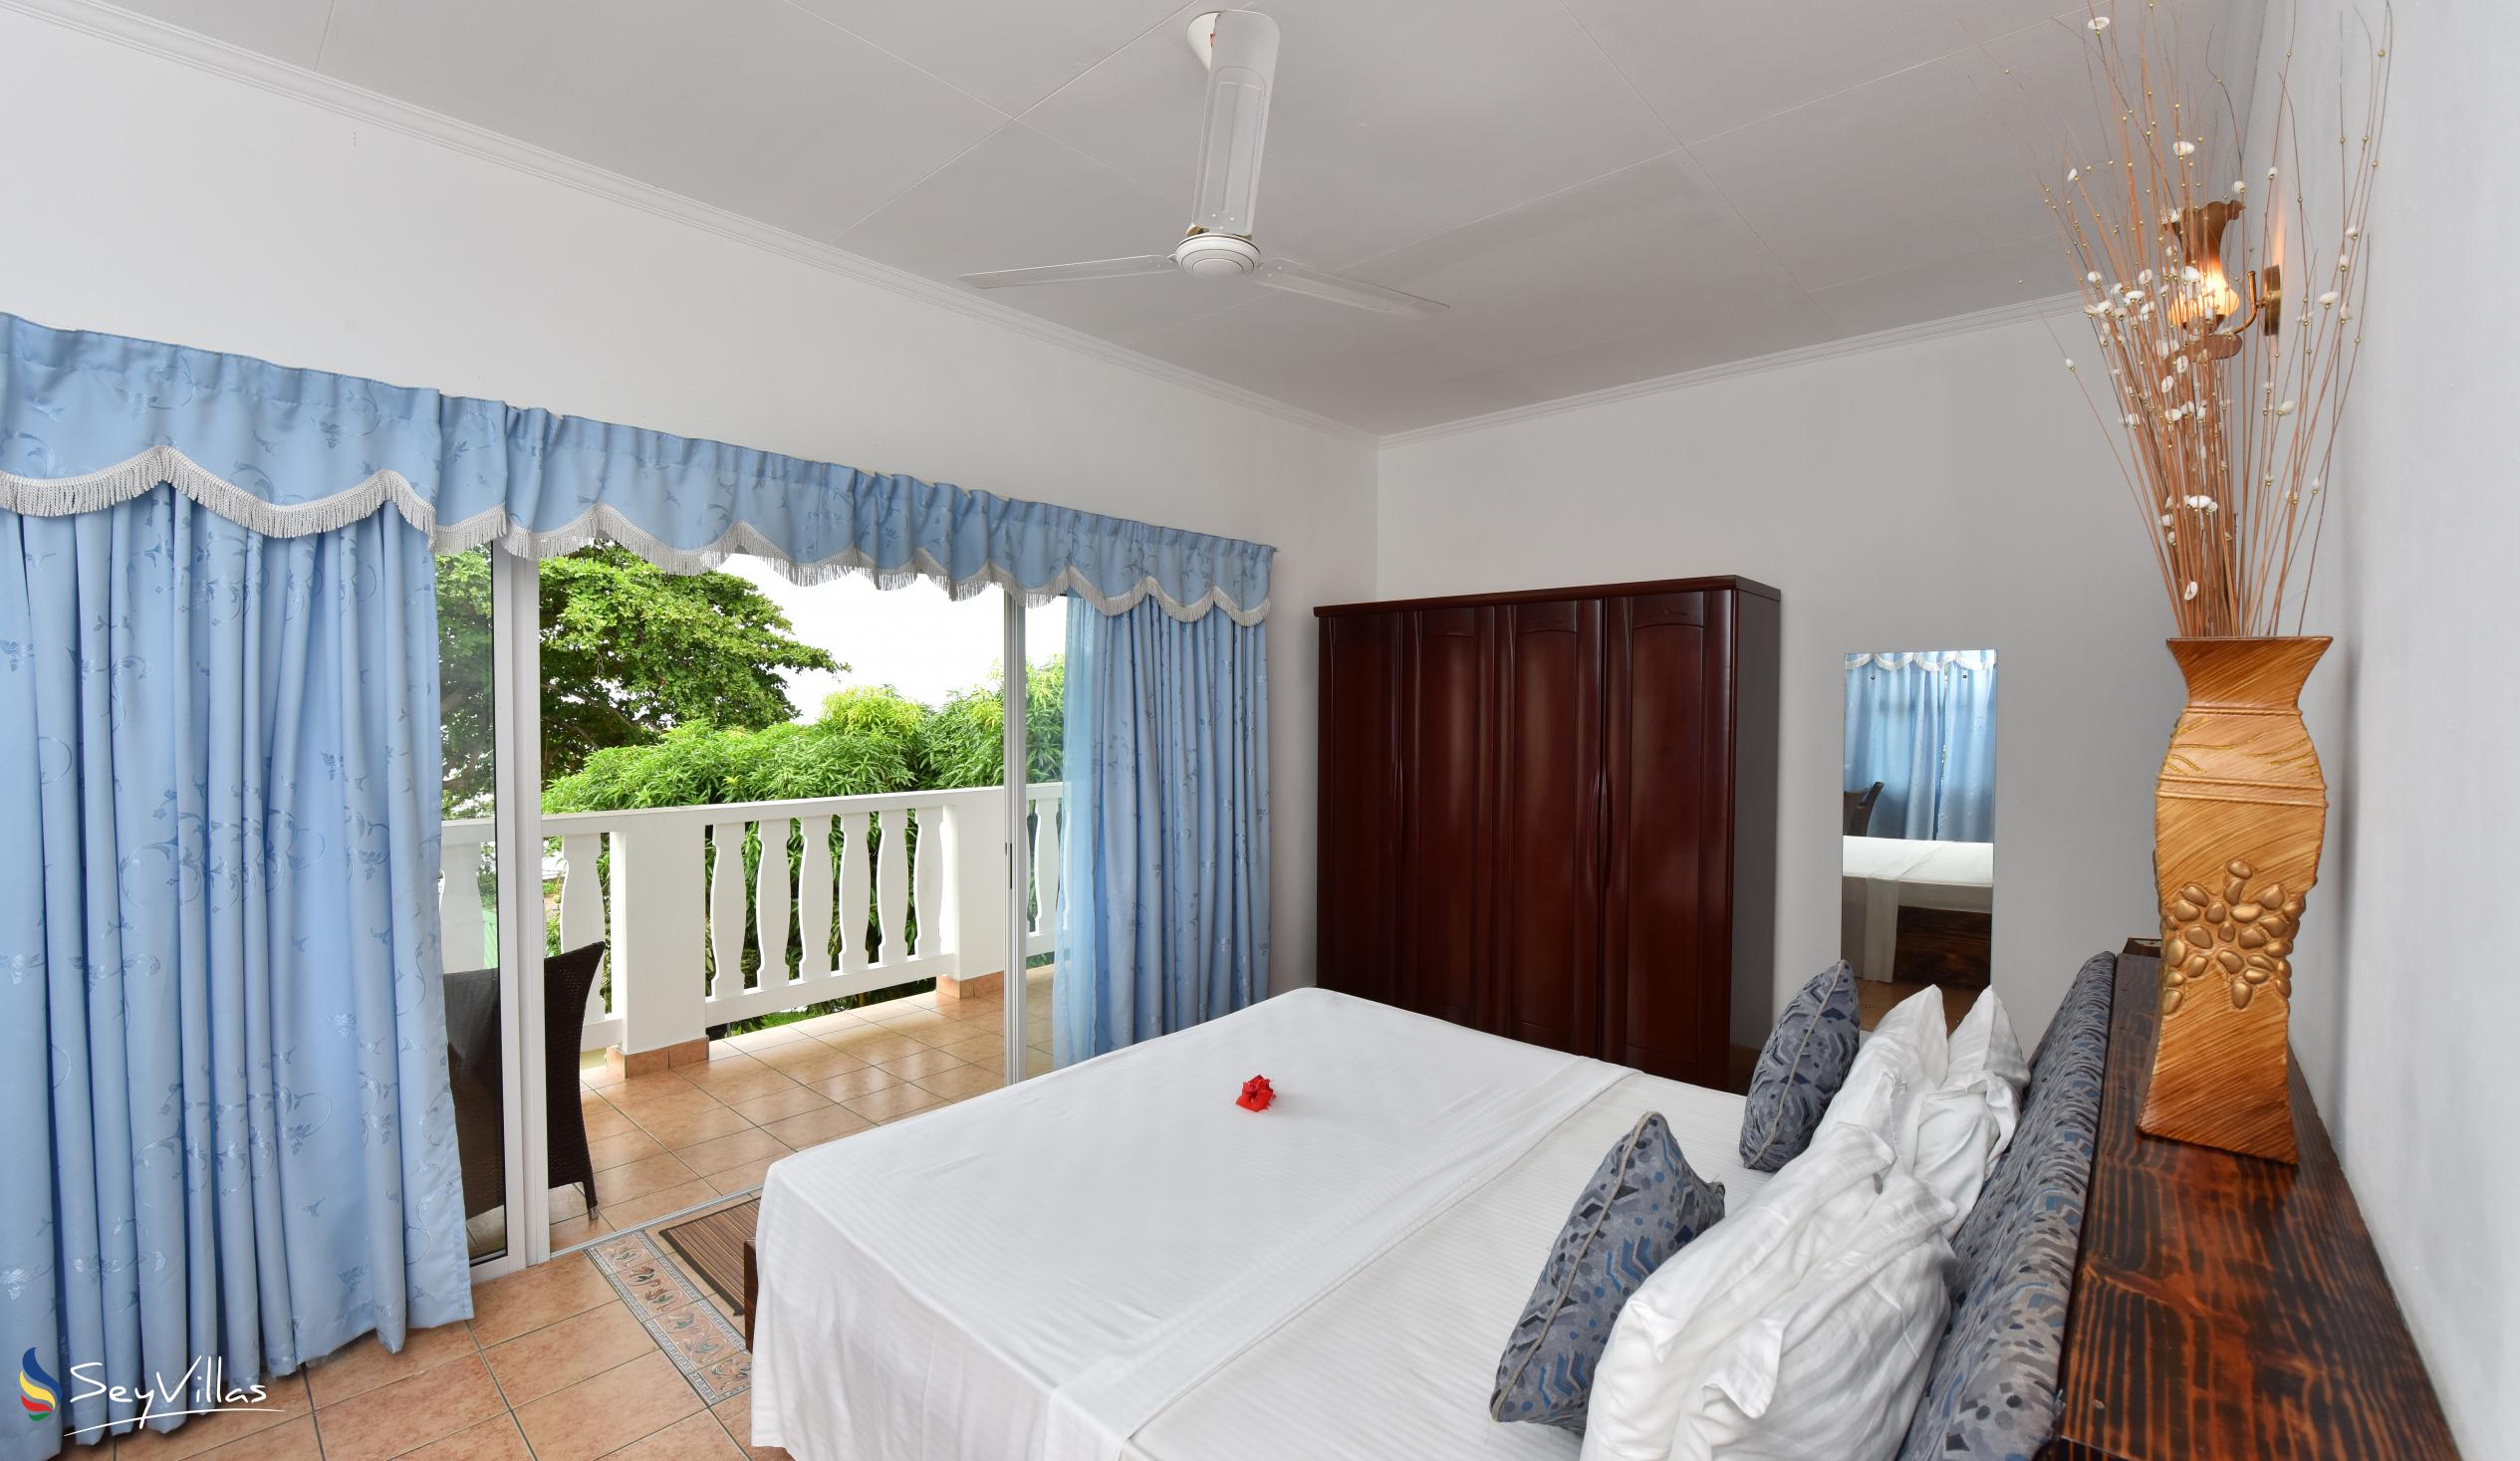 Foto 13: The Diver's Lodge - Chambre standard (premier étage) - Mahé (Seychelles)